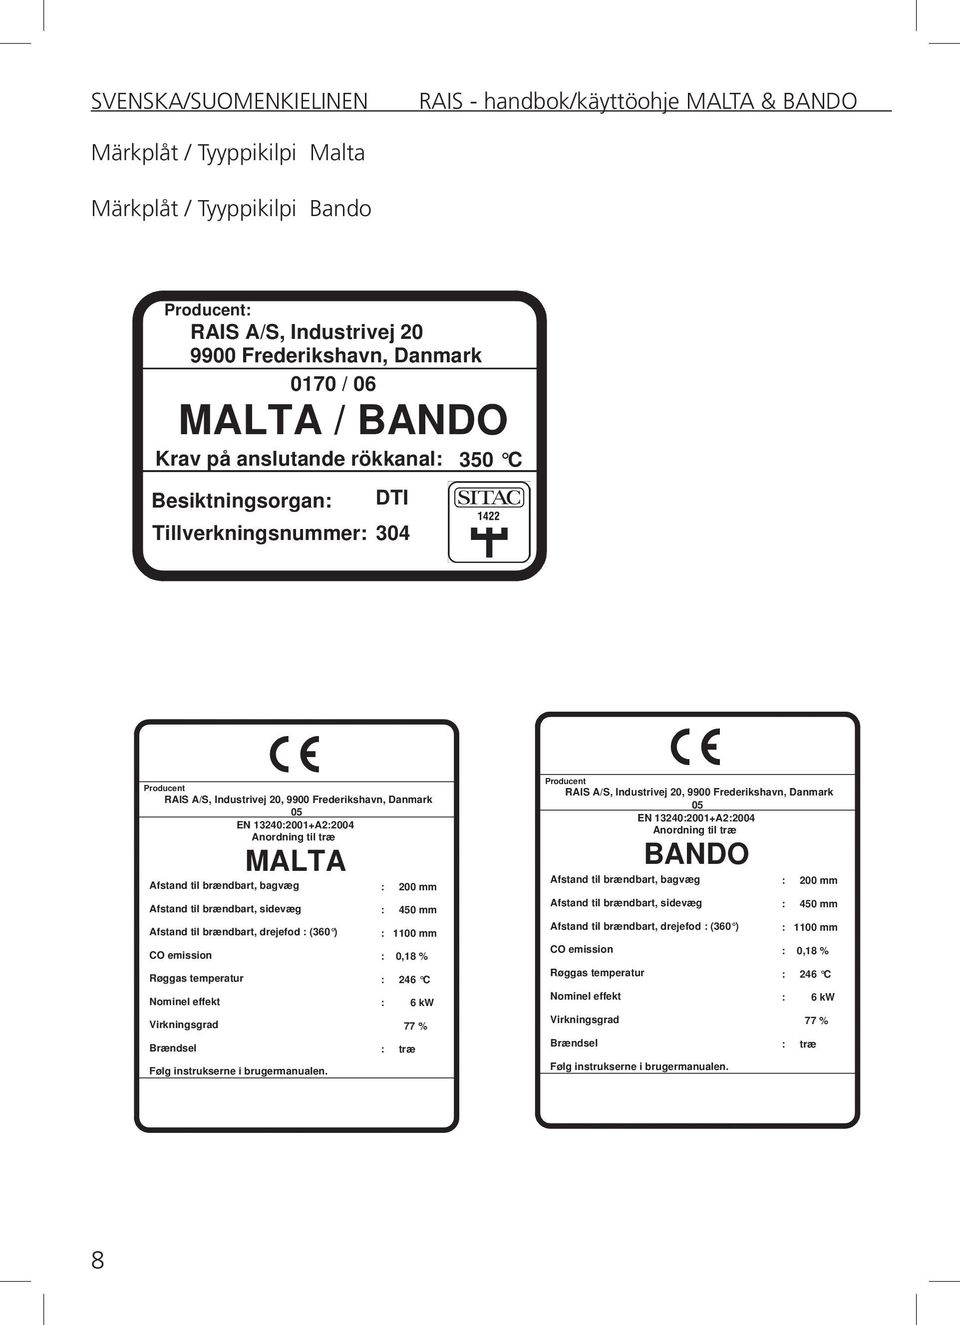 Afstand til brændbart, drejefod : (360 ) CO emission Røggas temperatur Brændsel MALTA Følg instrukserne i brugermanualen.